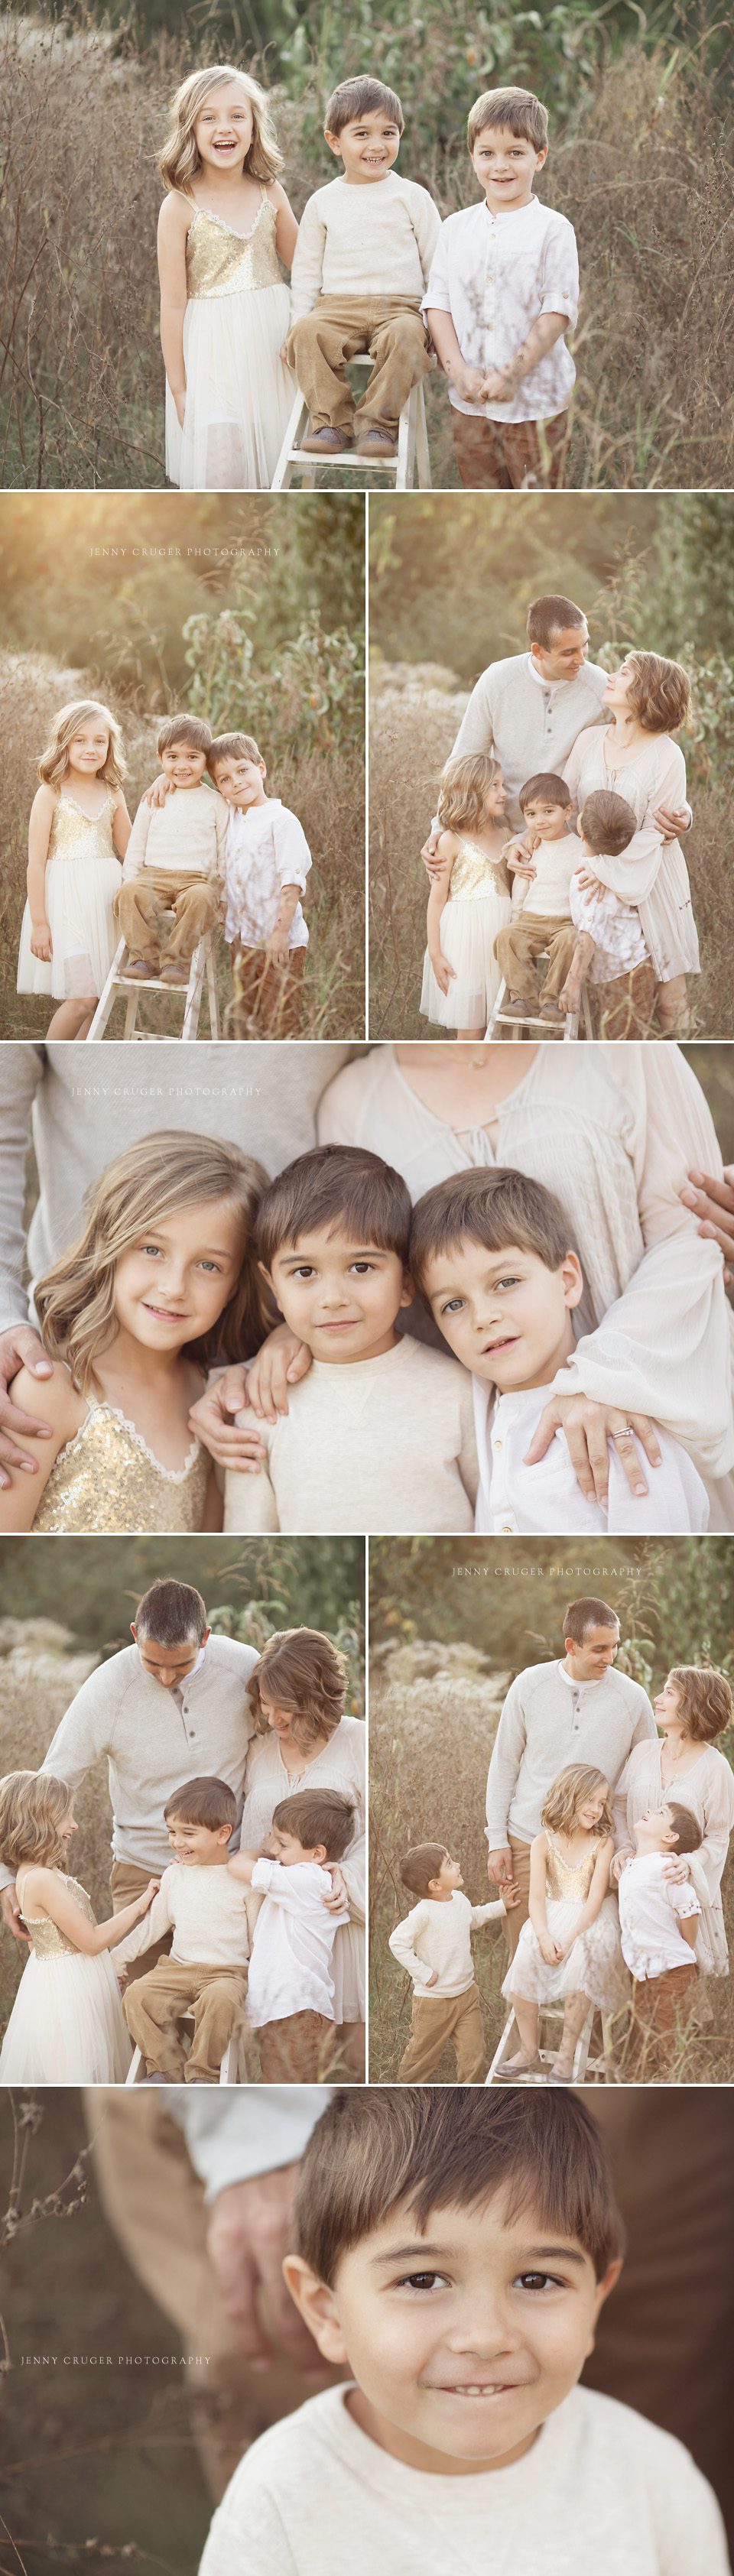 family photographer nashville little kids in golden field